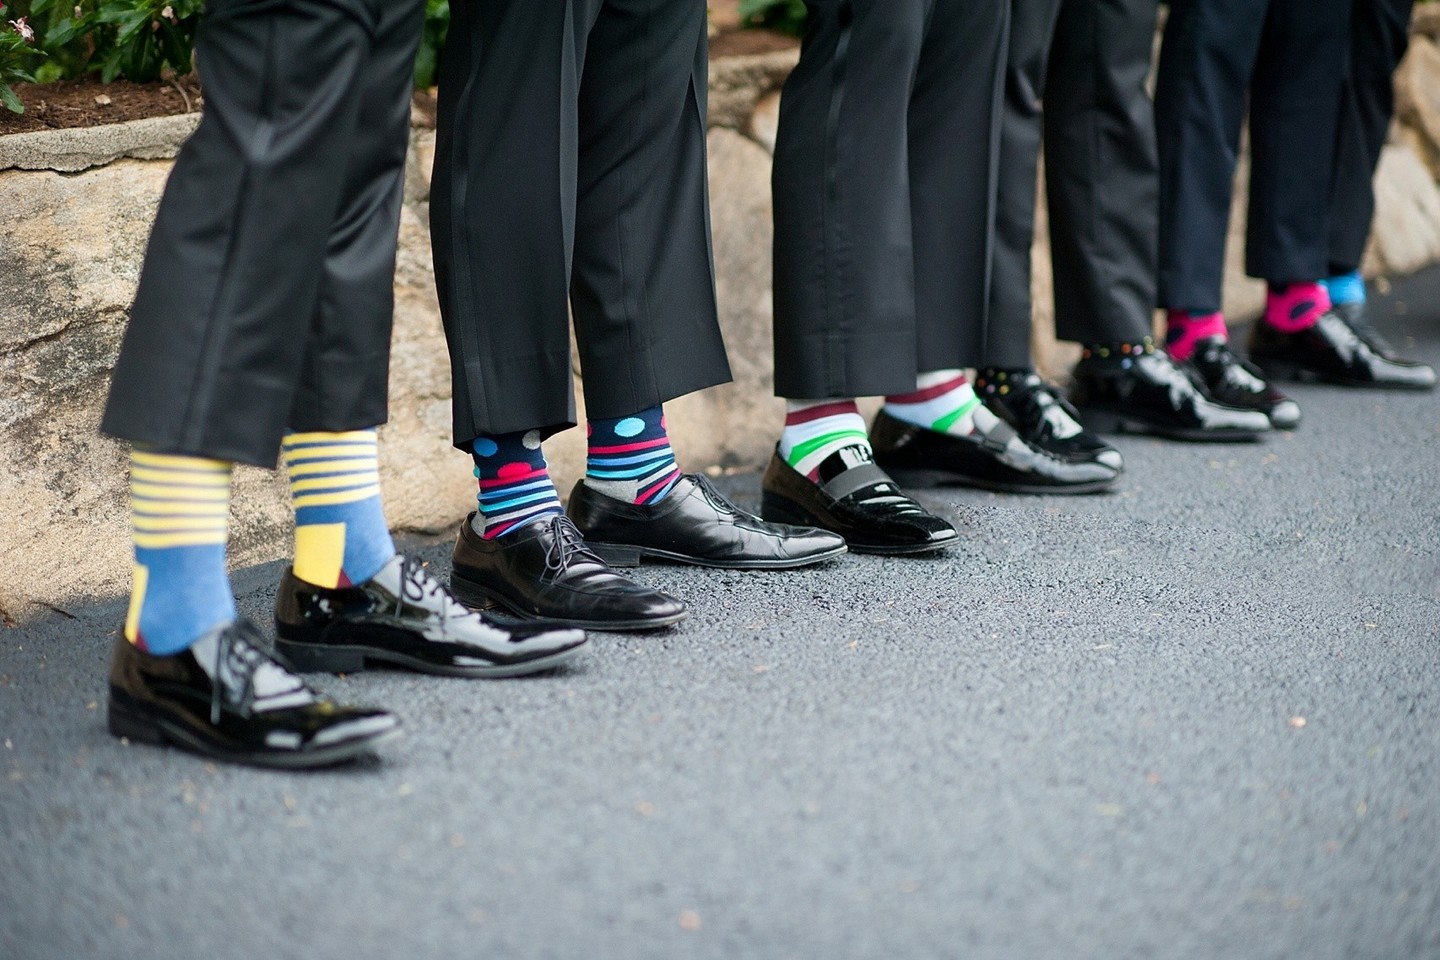 Tokios kojinės tikrai netiks einant į laidotuves ar renginį, kai privalu paisyti „black tie“ ar „white tie“ aprangos kodo. O visomis kitomis progomis idealiai tinka toks posakis: „nemūvėk kojinių, kurios yra linksmesnės nei pats“.